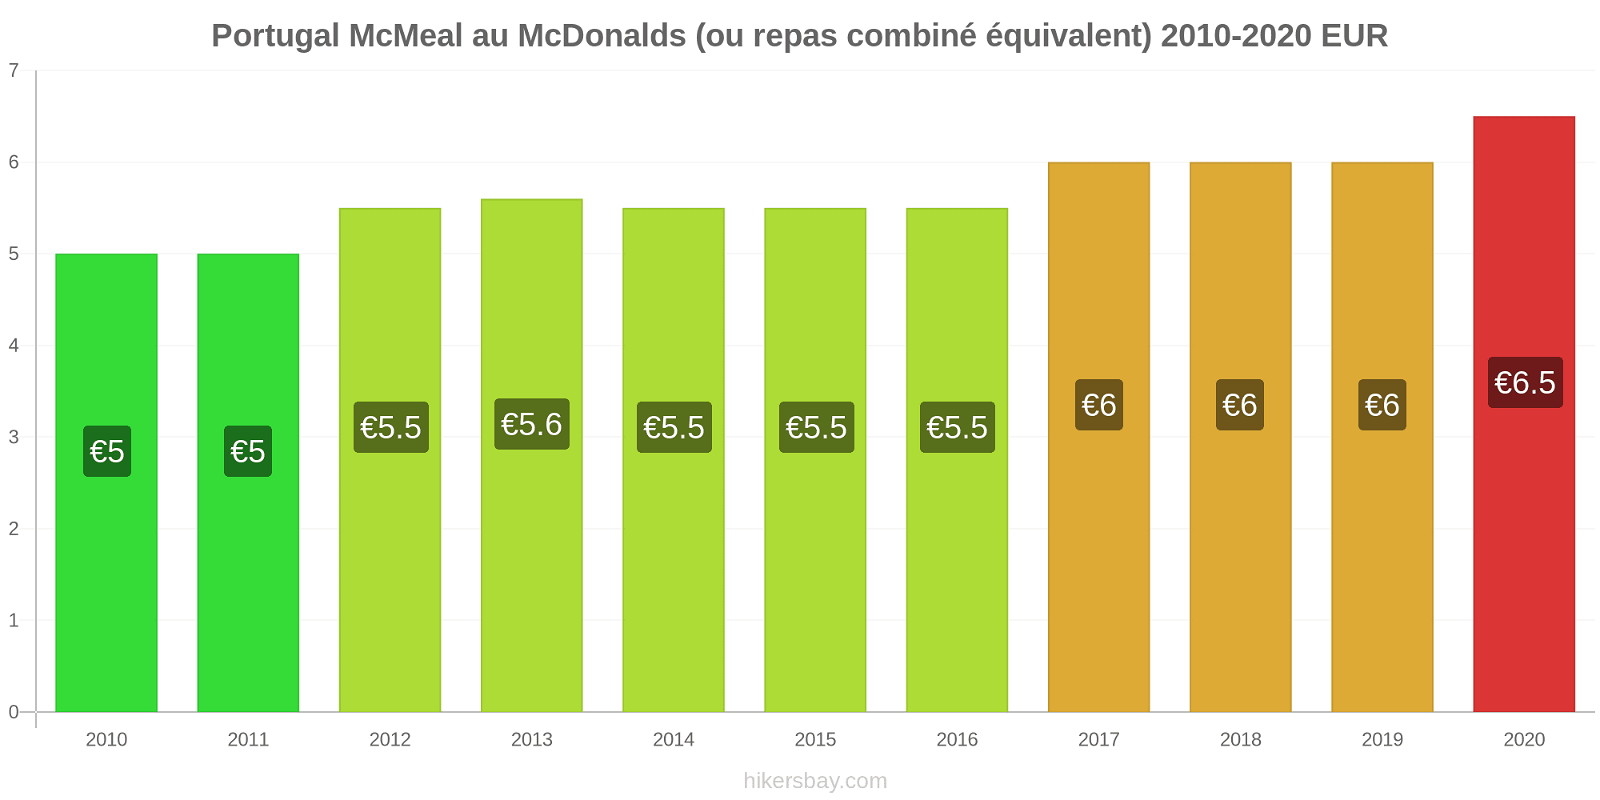 Portugal changements de prix McMeal à McDonald ' s (ou Combo équivalent tourteau) hikersbay.com